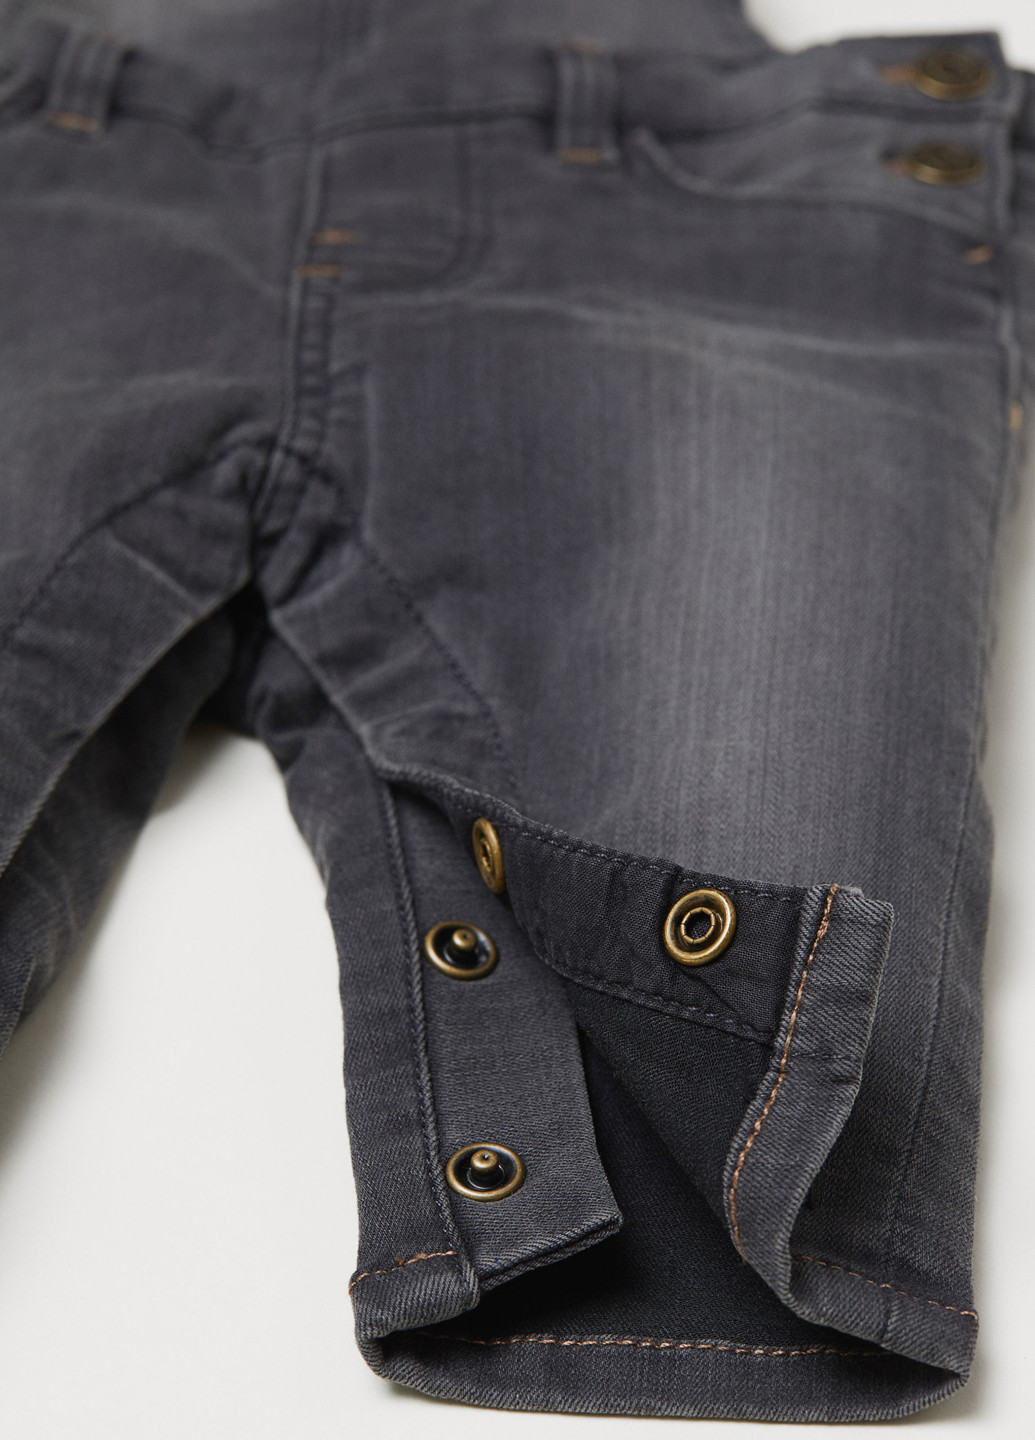 Комбинезон H&M комбинезон-брюки однотонный графитовый джинсовый